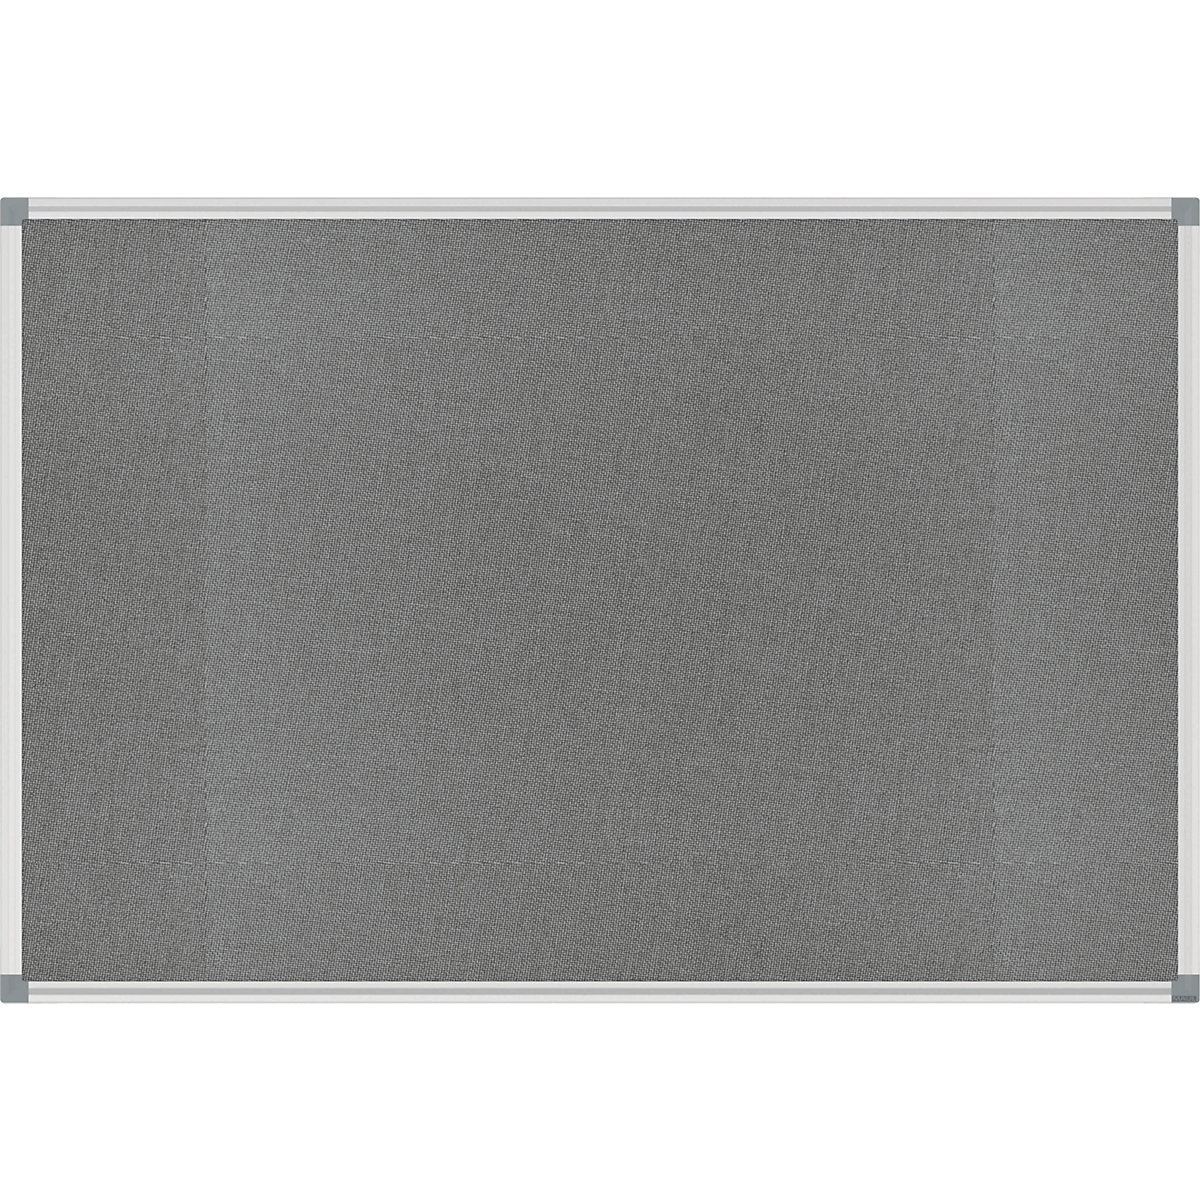 Nástěnka STANDARD – MAUL, plstěný potah, šedá, š x v 900 x 600 mm